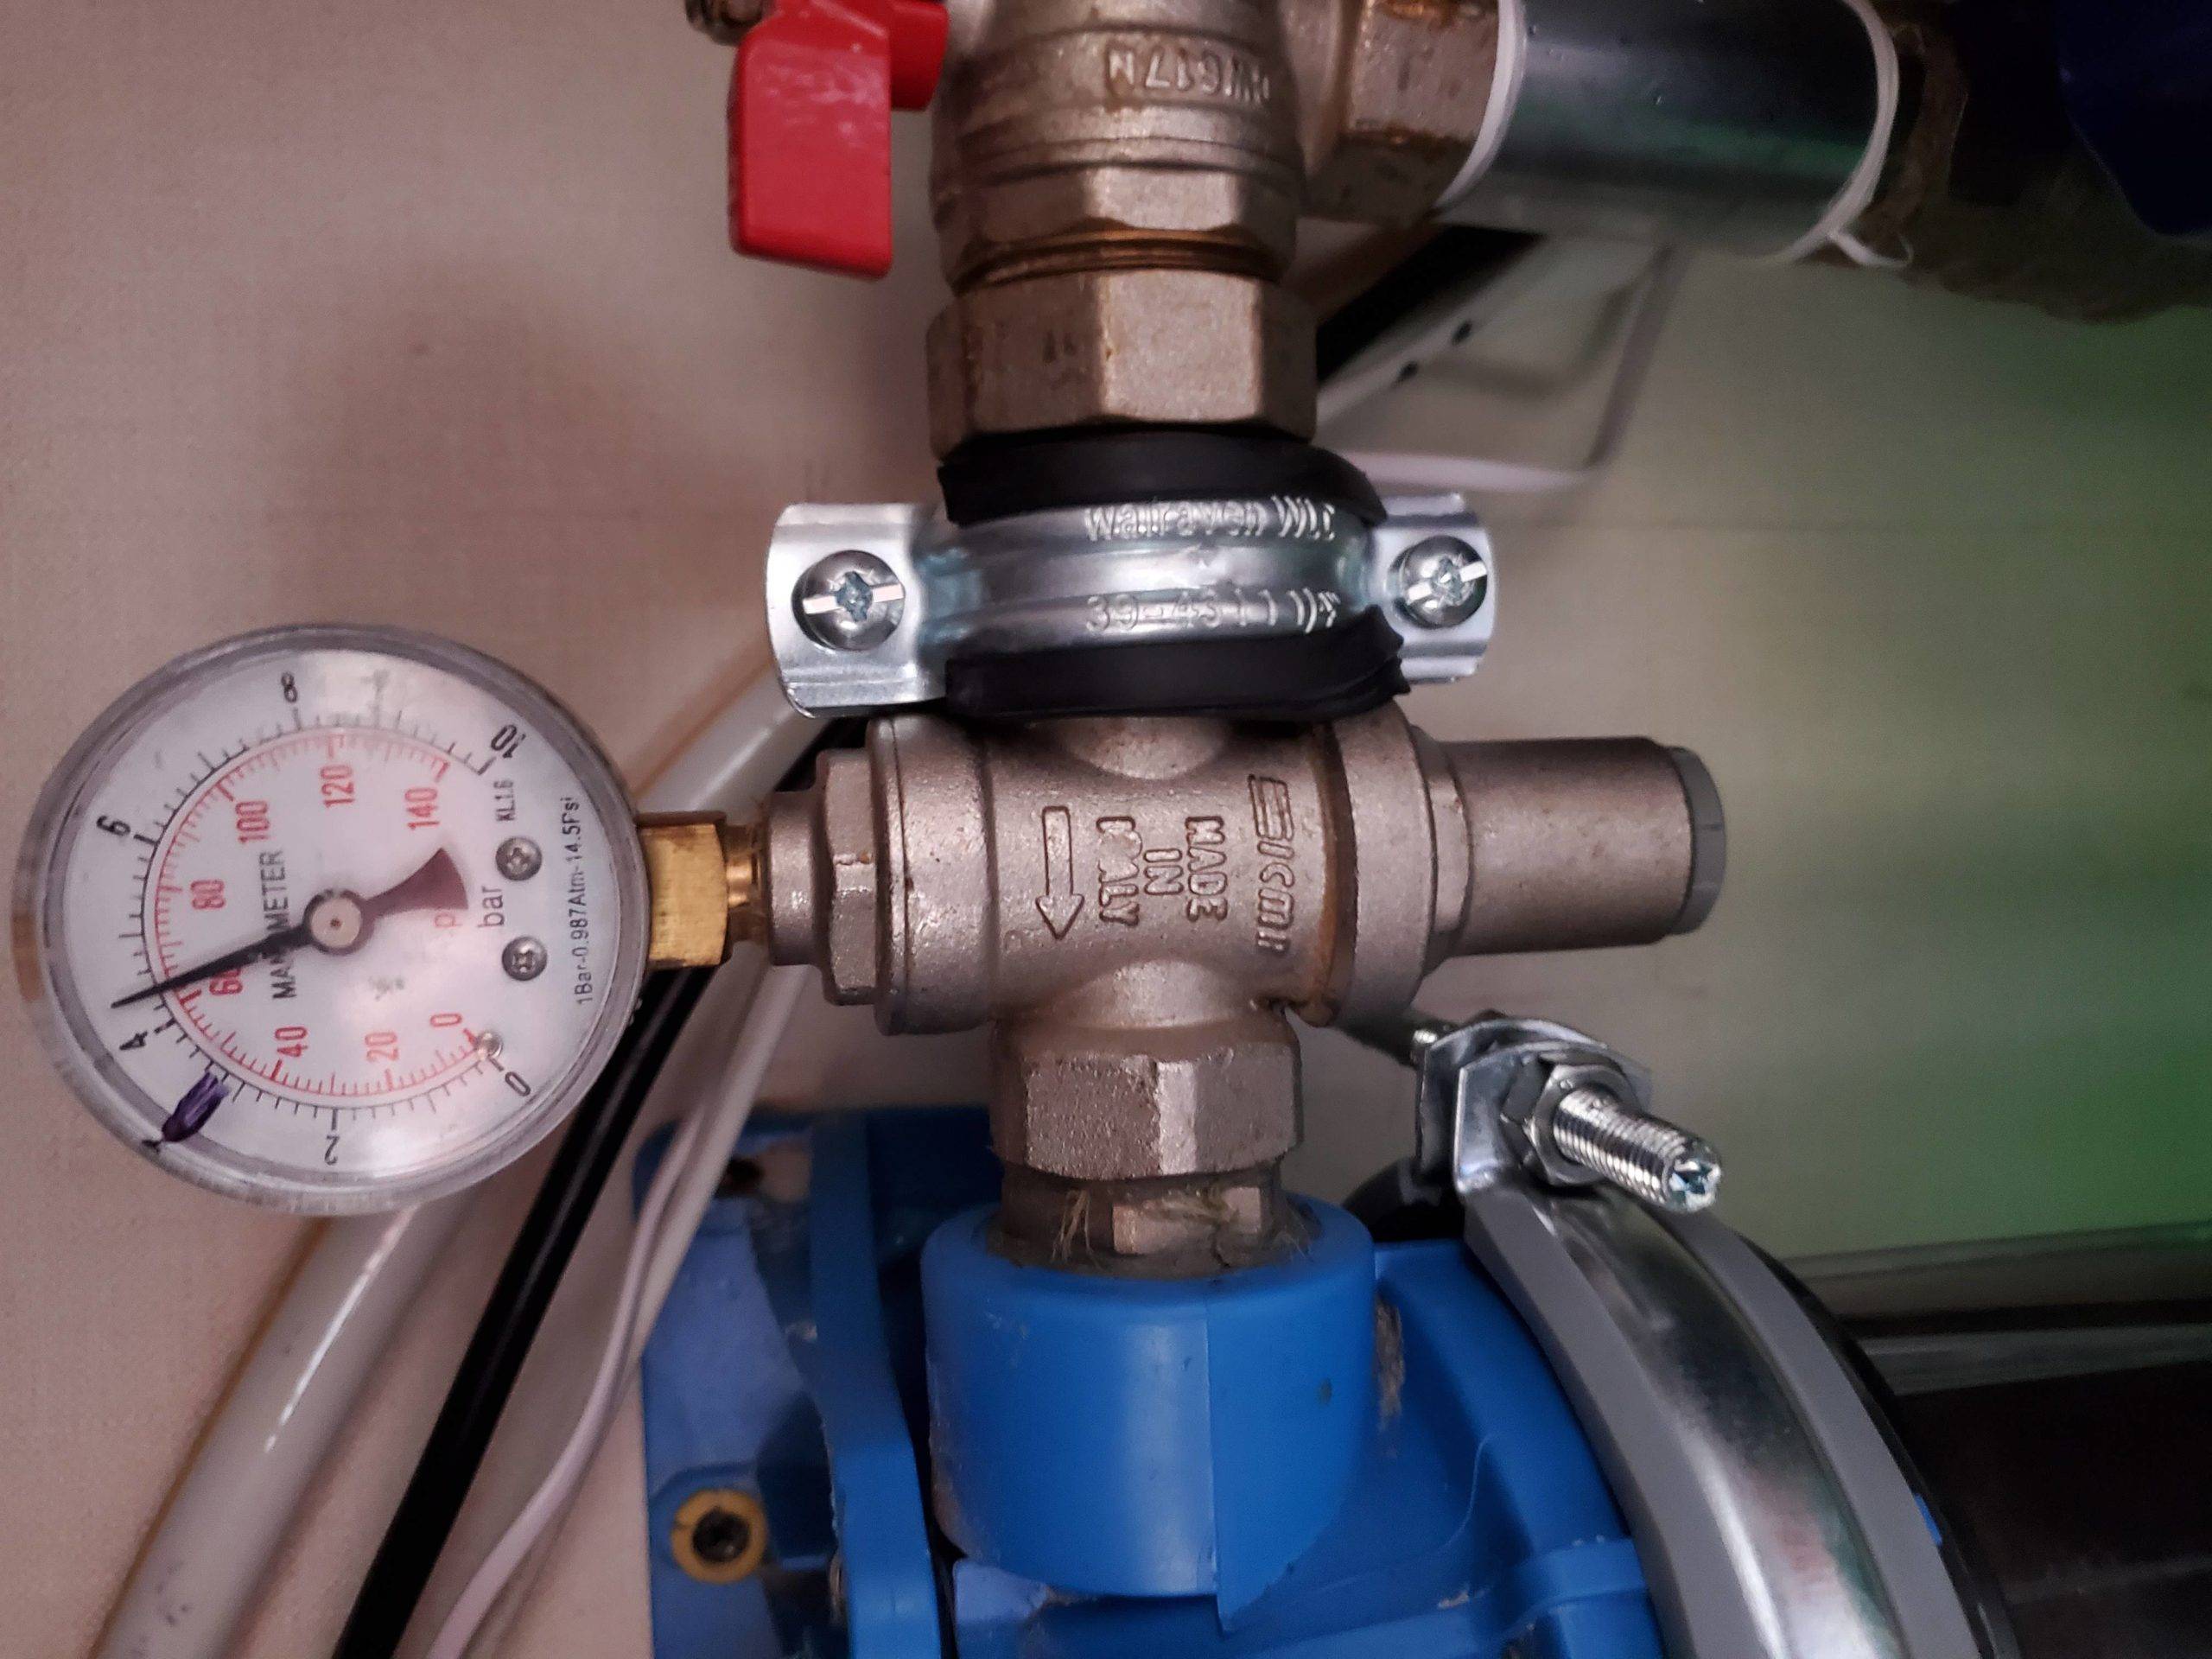 Как разобрать регулятор давления воды в квартире? - отопление и водоснабжение - нюансы, которые надо знать